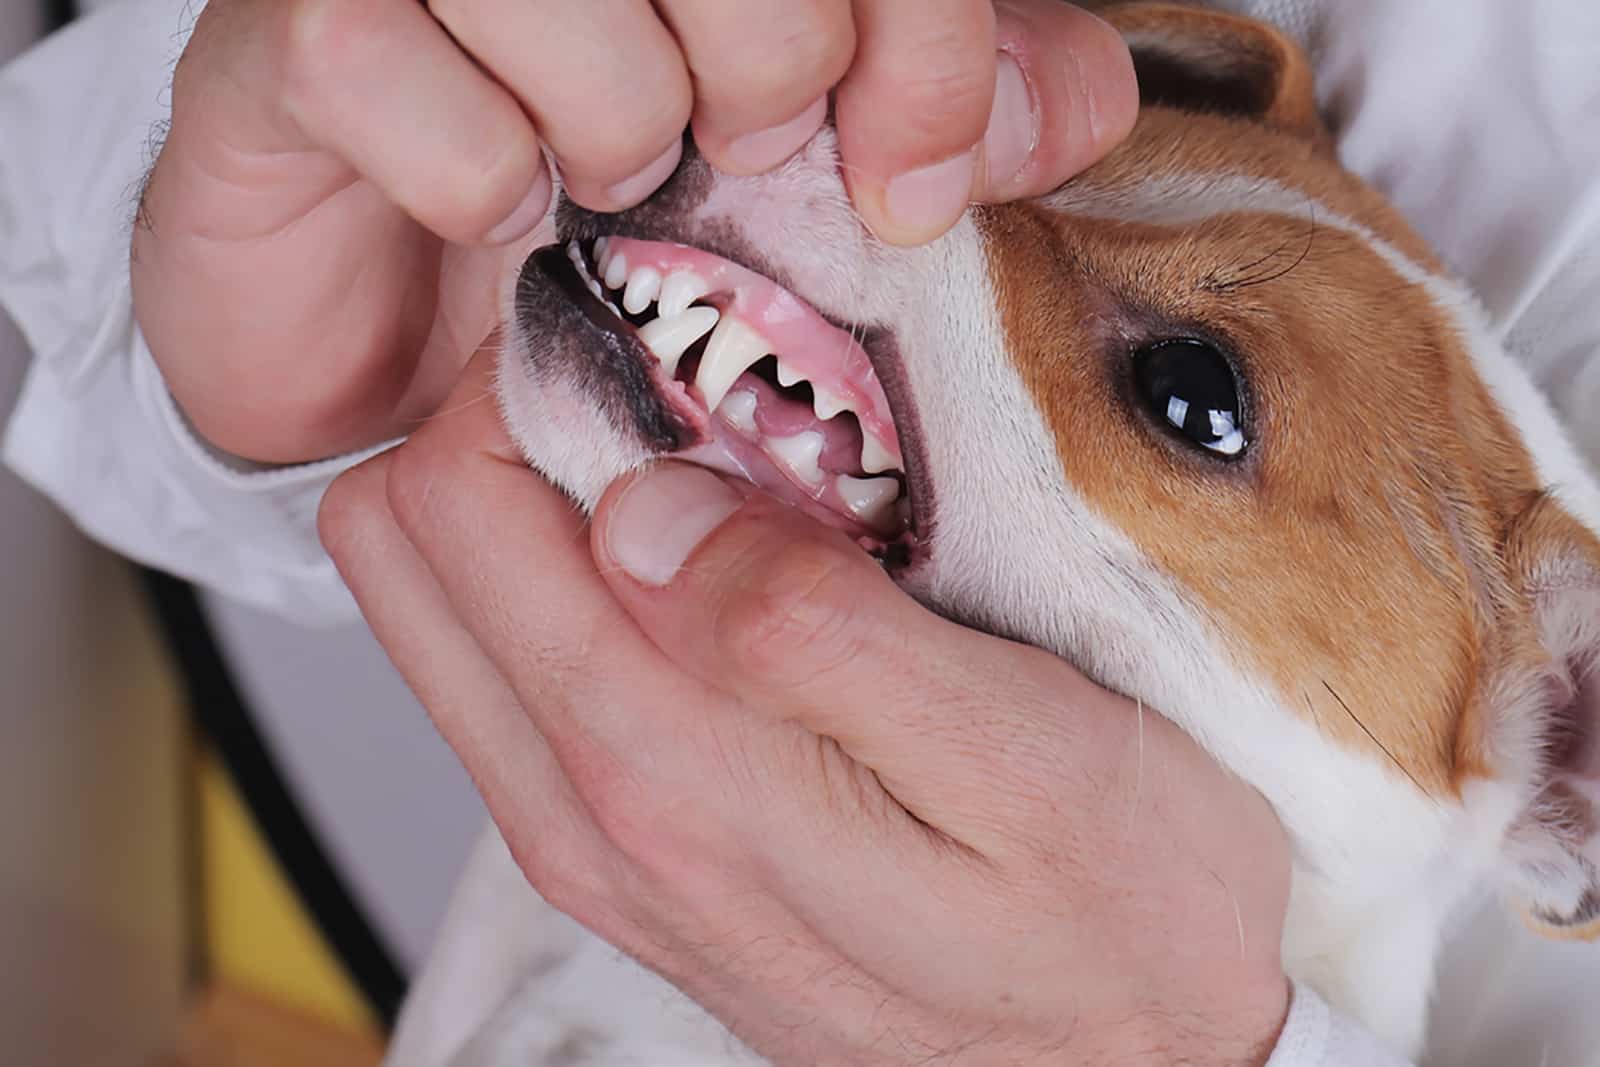 the veterinarian checks dog's gums at examination